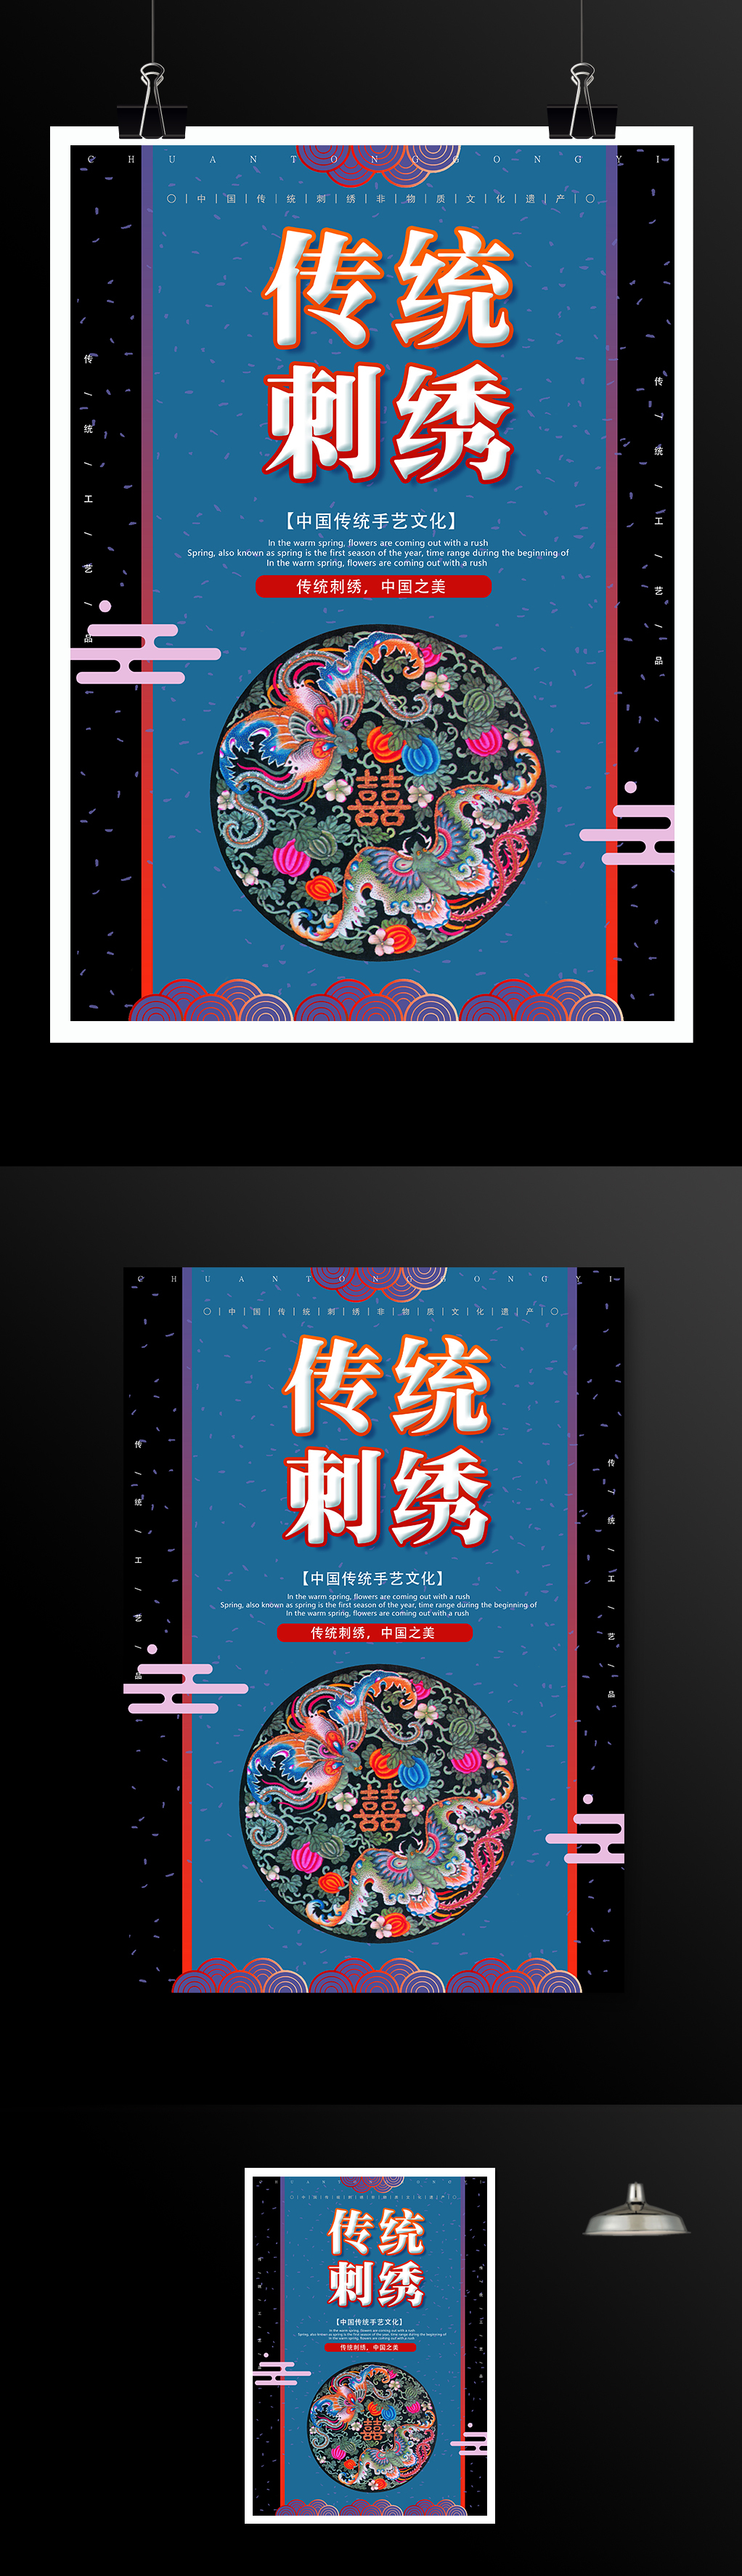 中国传统文化刺绣宣传海报